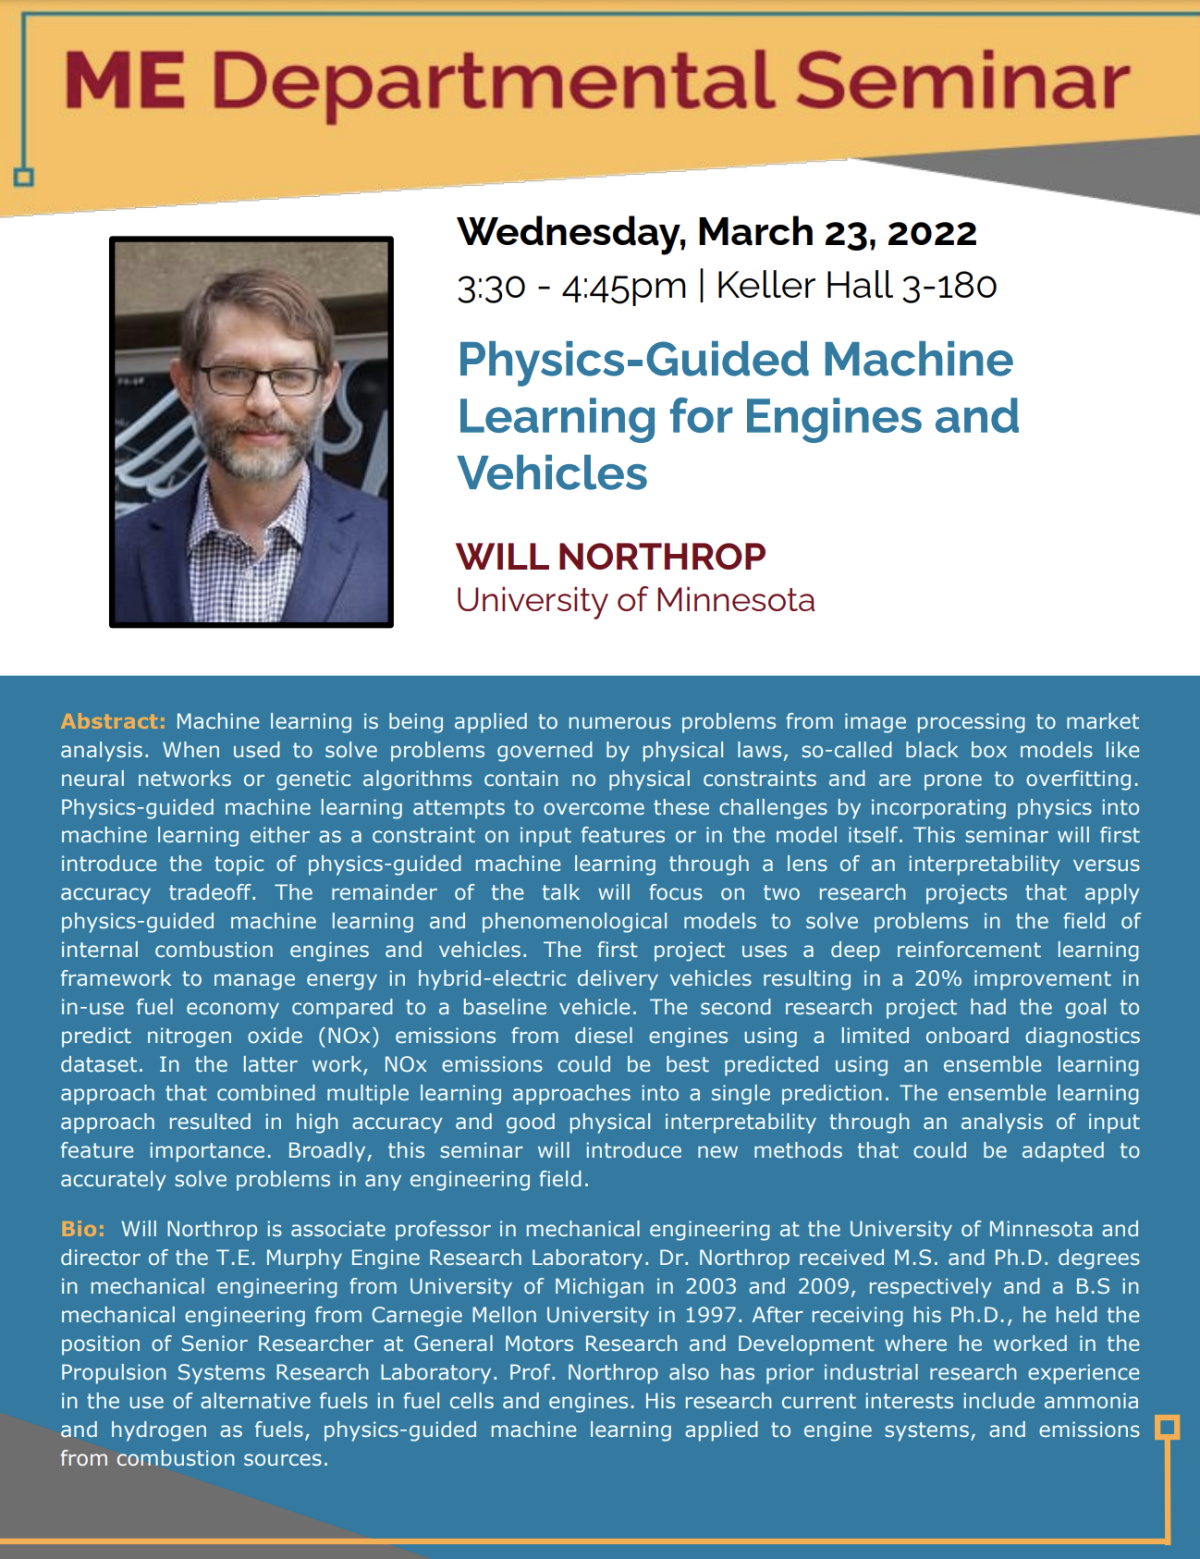 Seminar flyer for Will Northrop